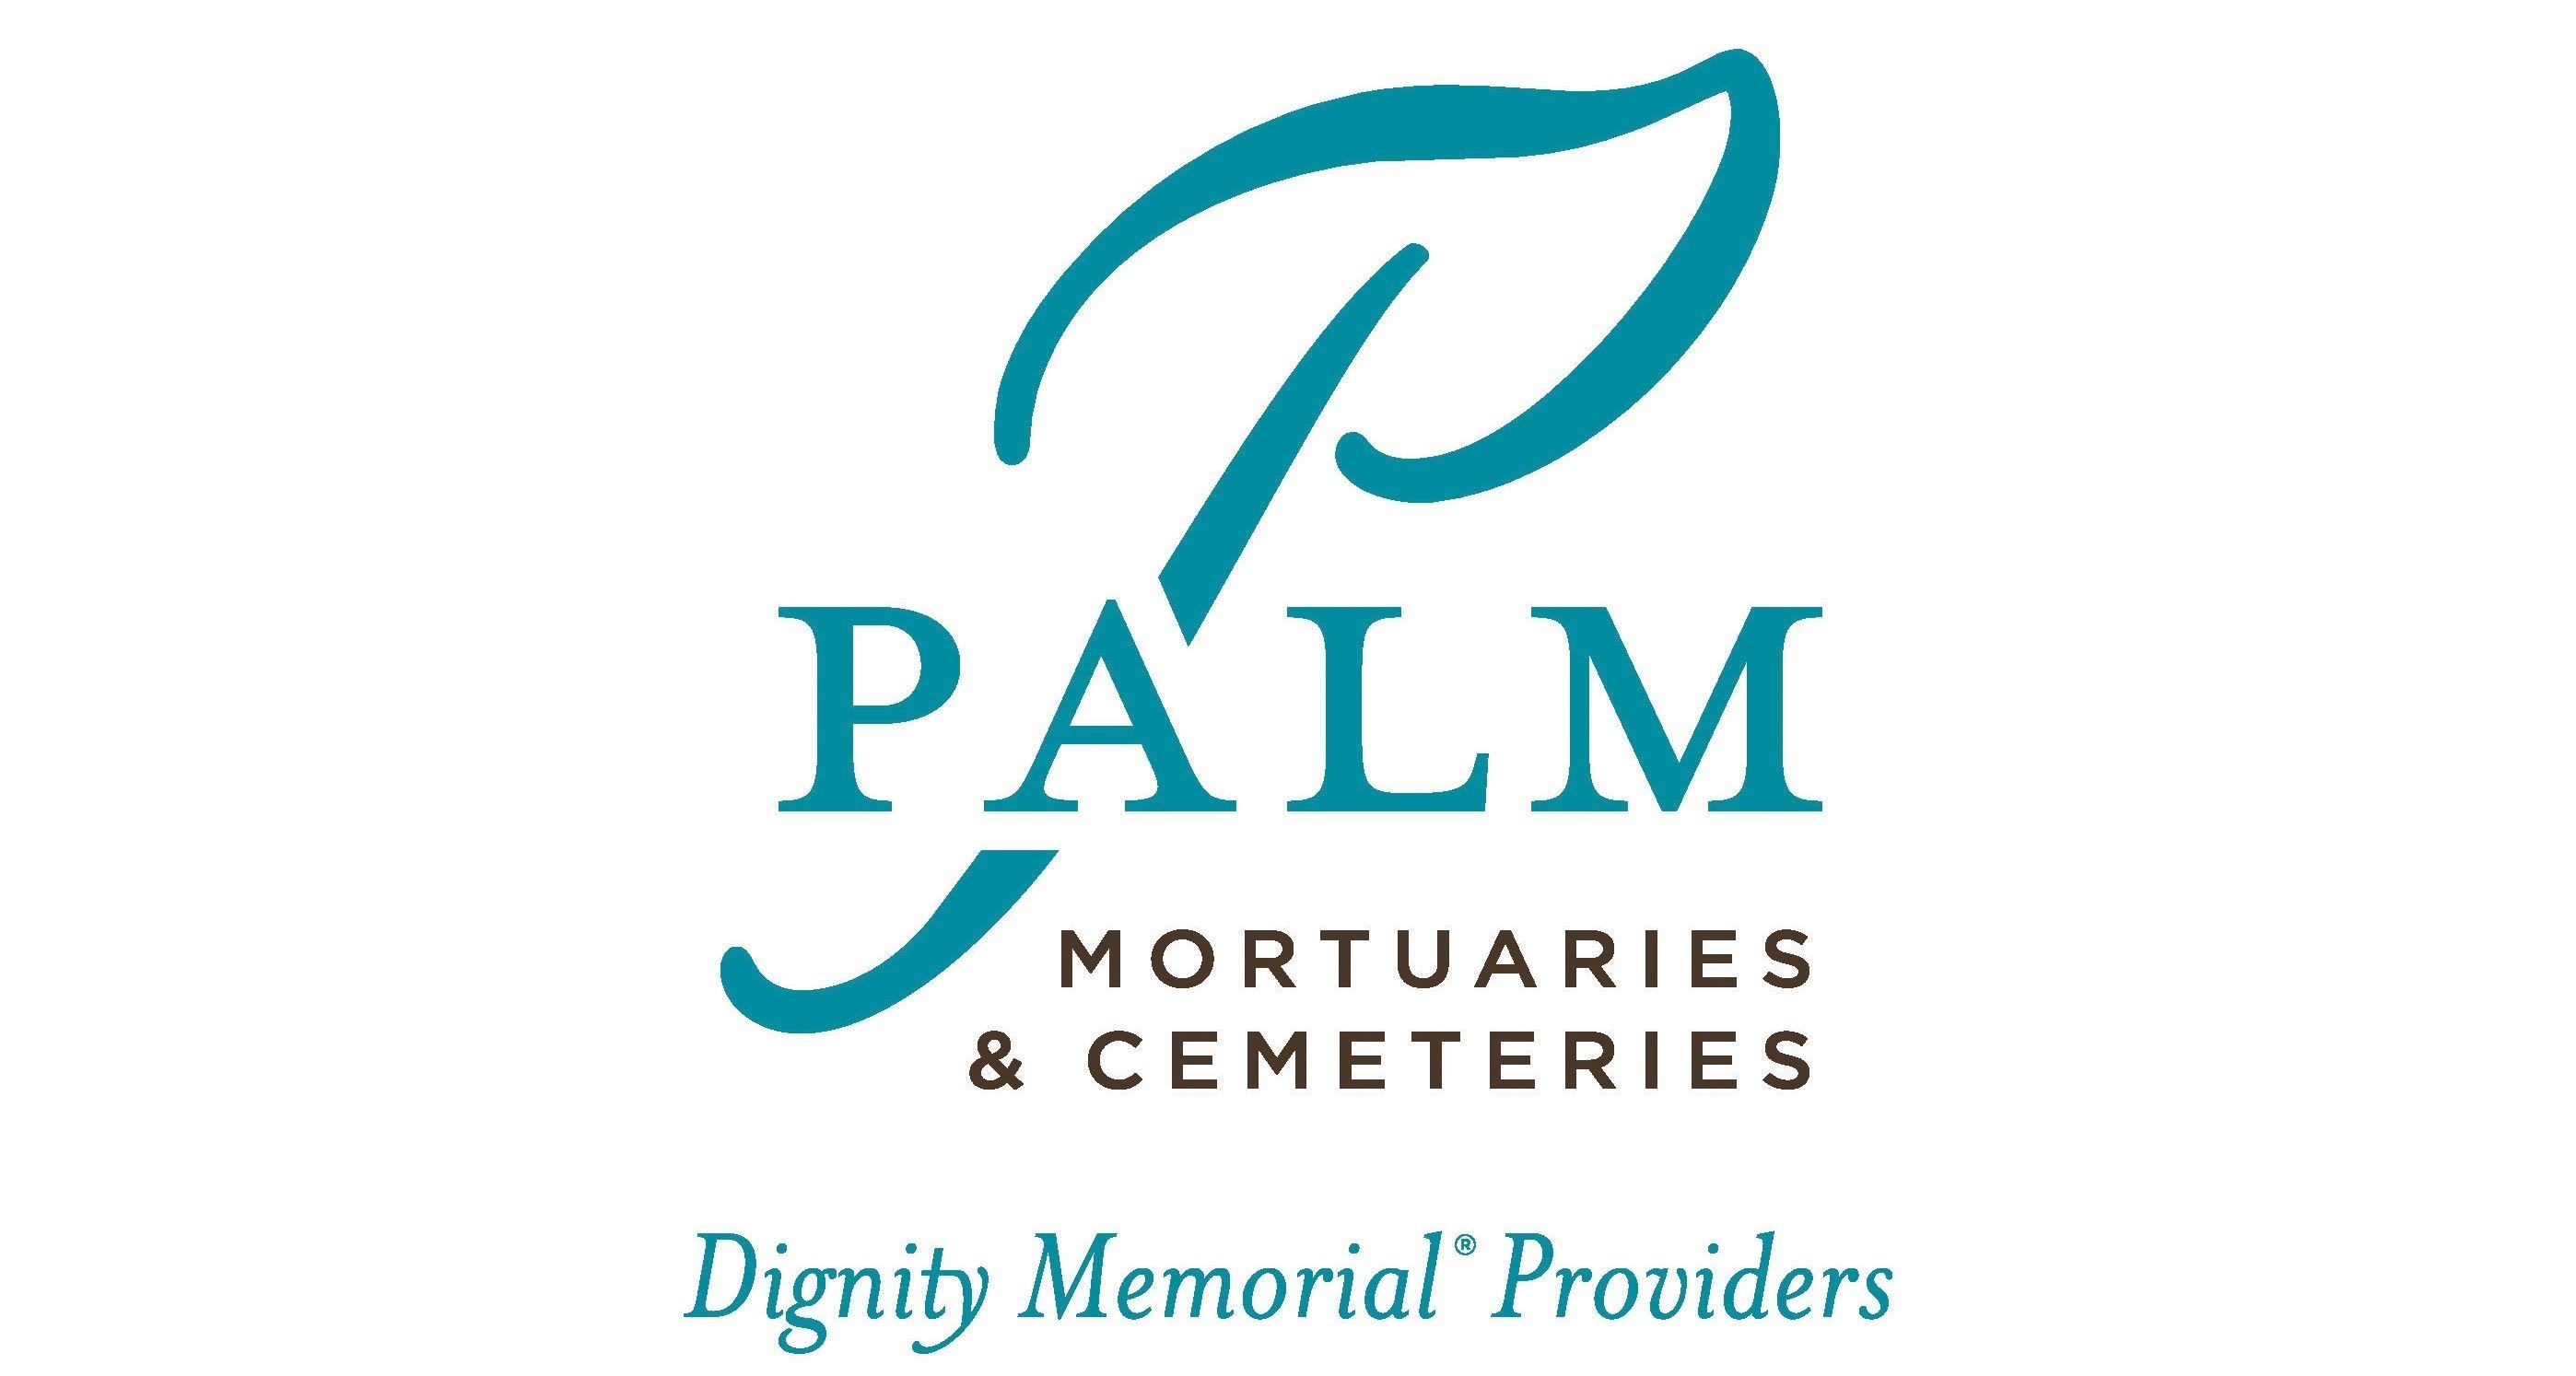 Palm Mortuary